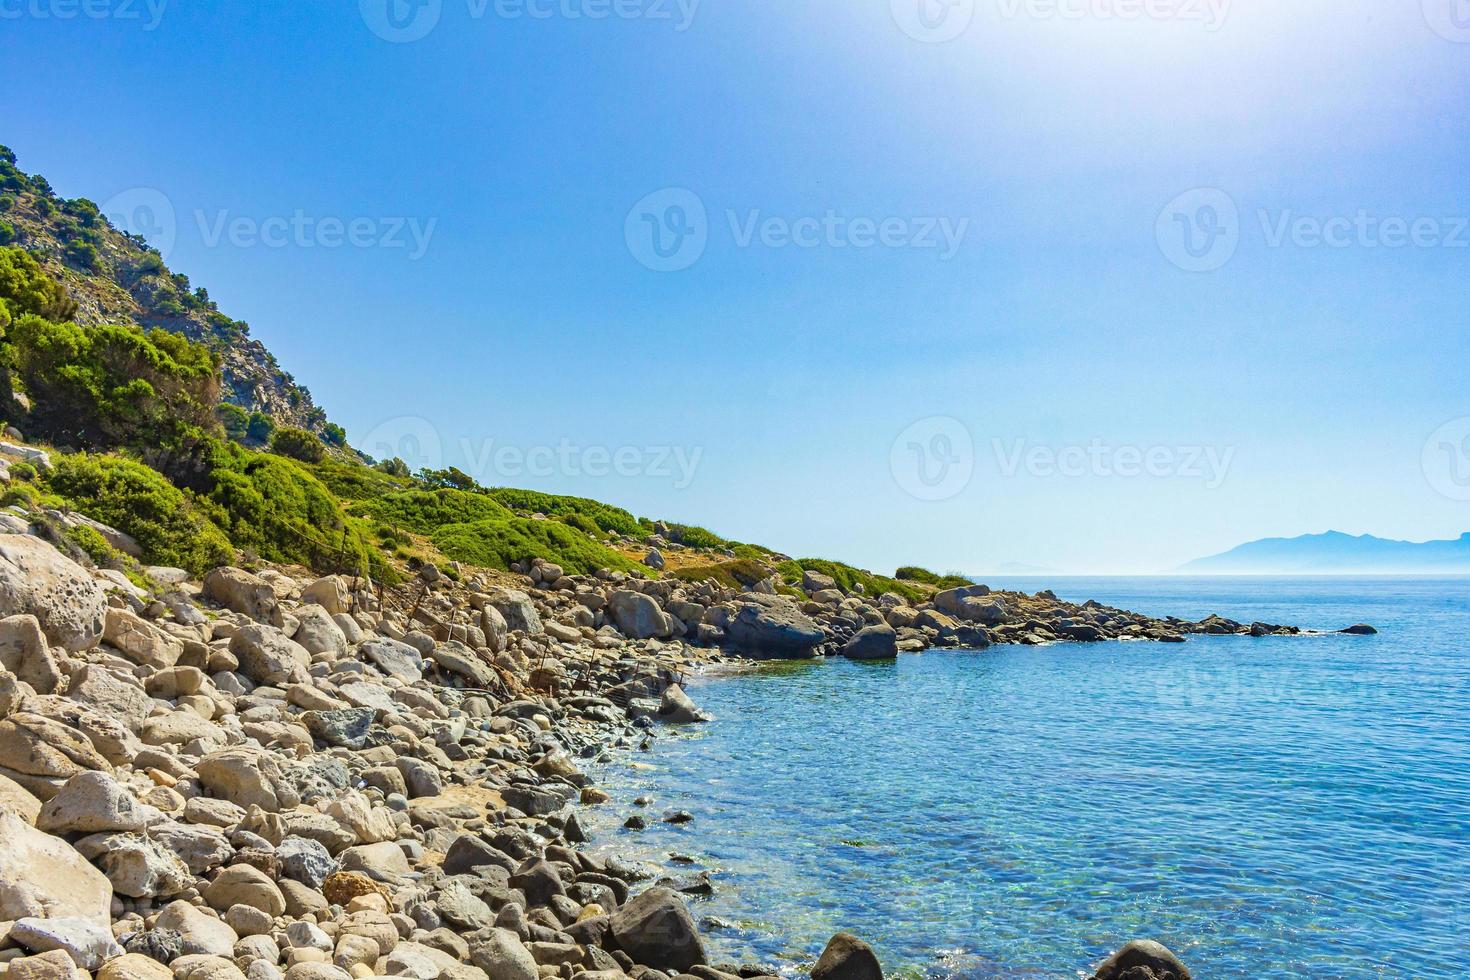 natuurlijke kustlandschappen kos eiland griekenland bergen kliffen rotsen. foto